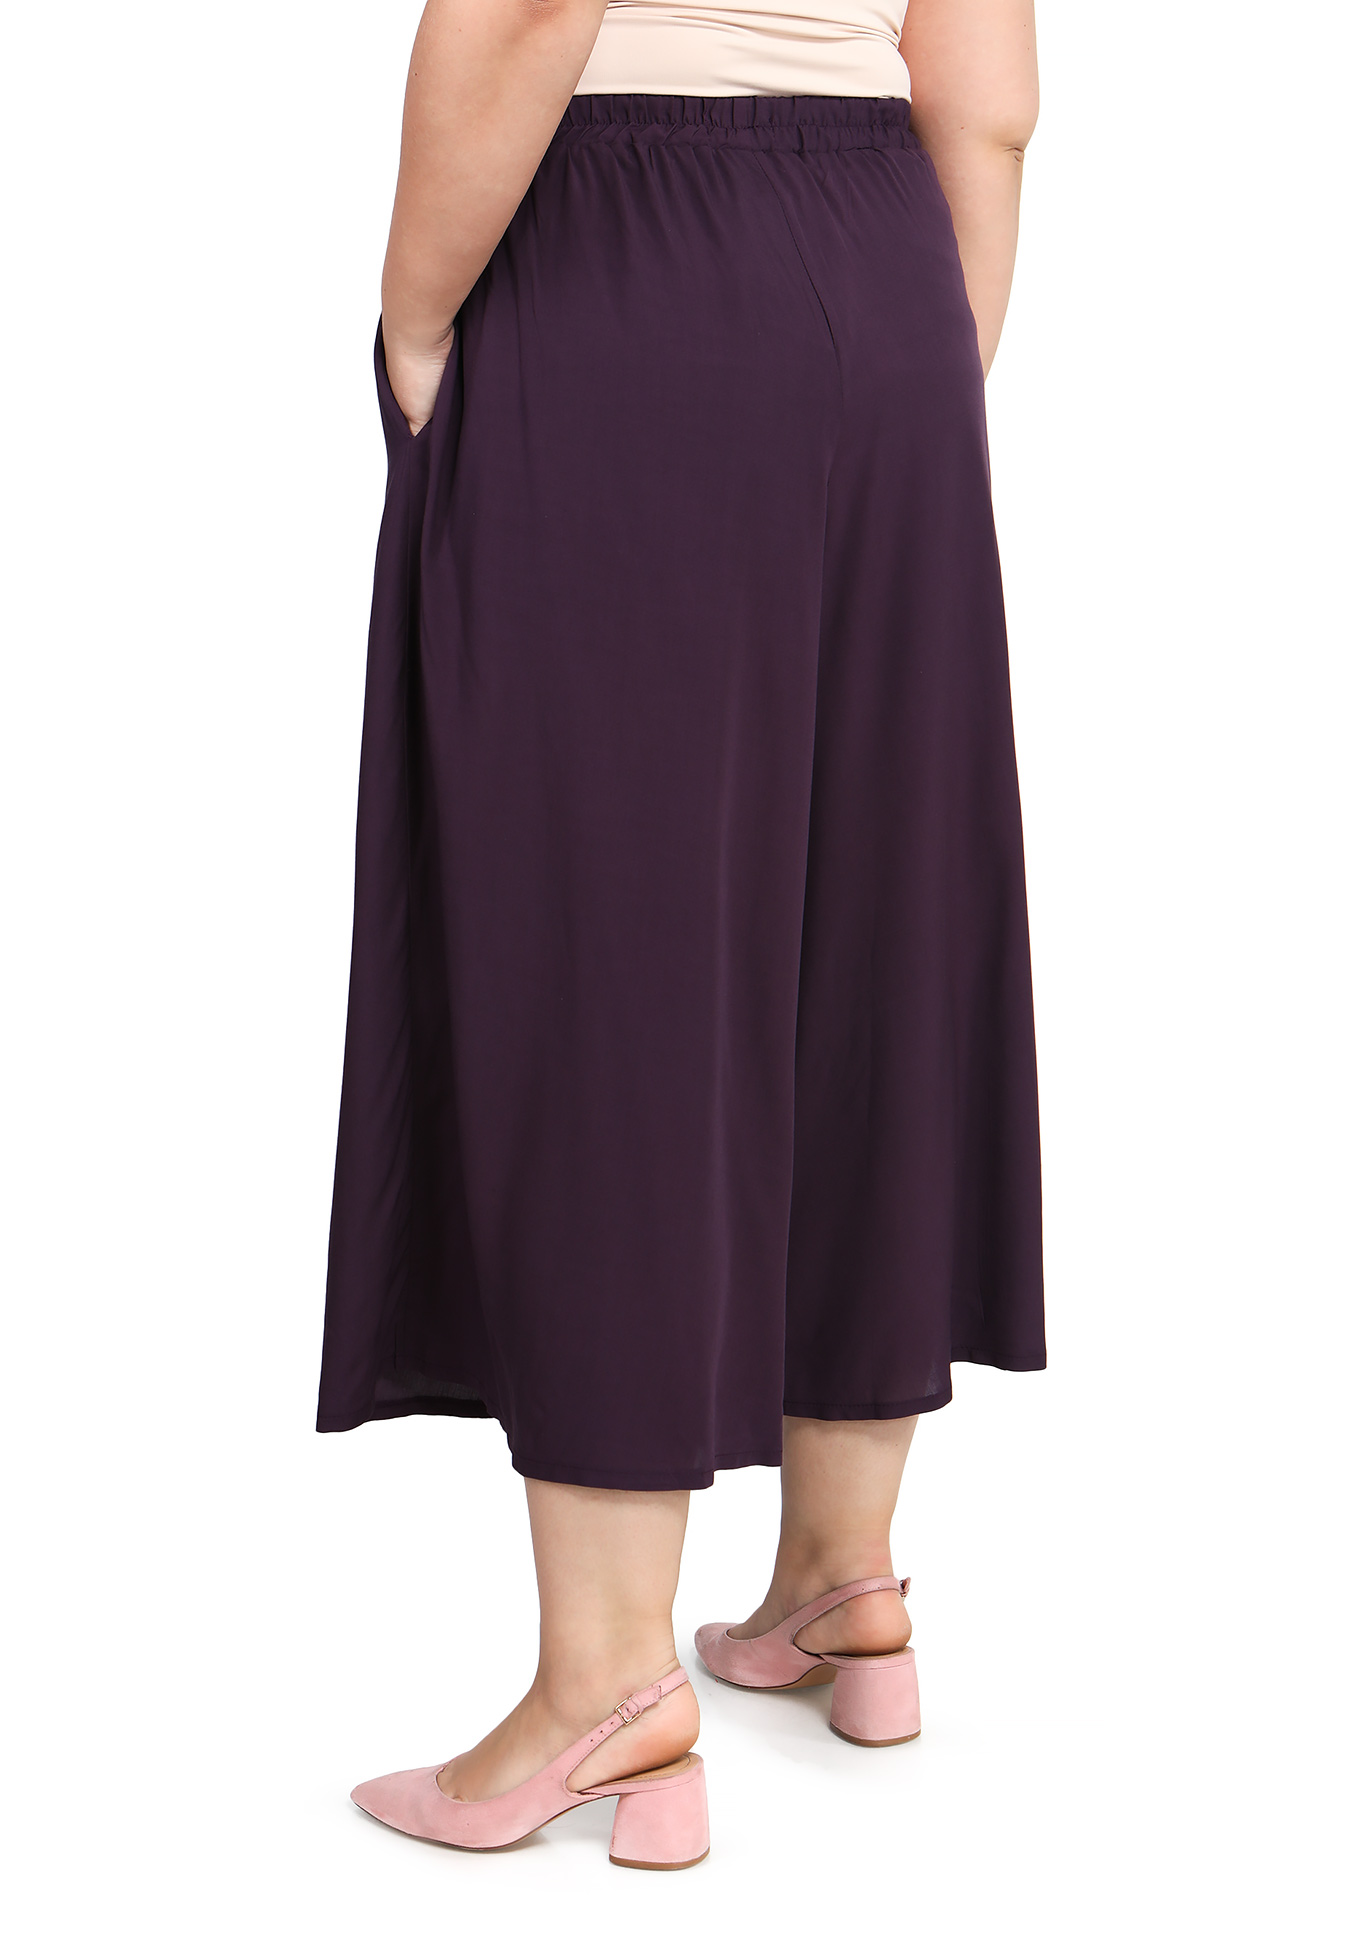 Брюки-кюлоты "Модная леди" Bianka Modeno, размер 54, цвет баклажановый - фото 4